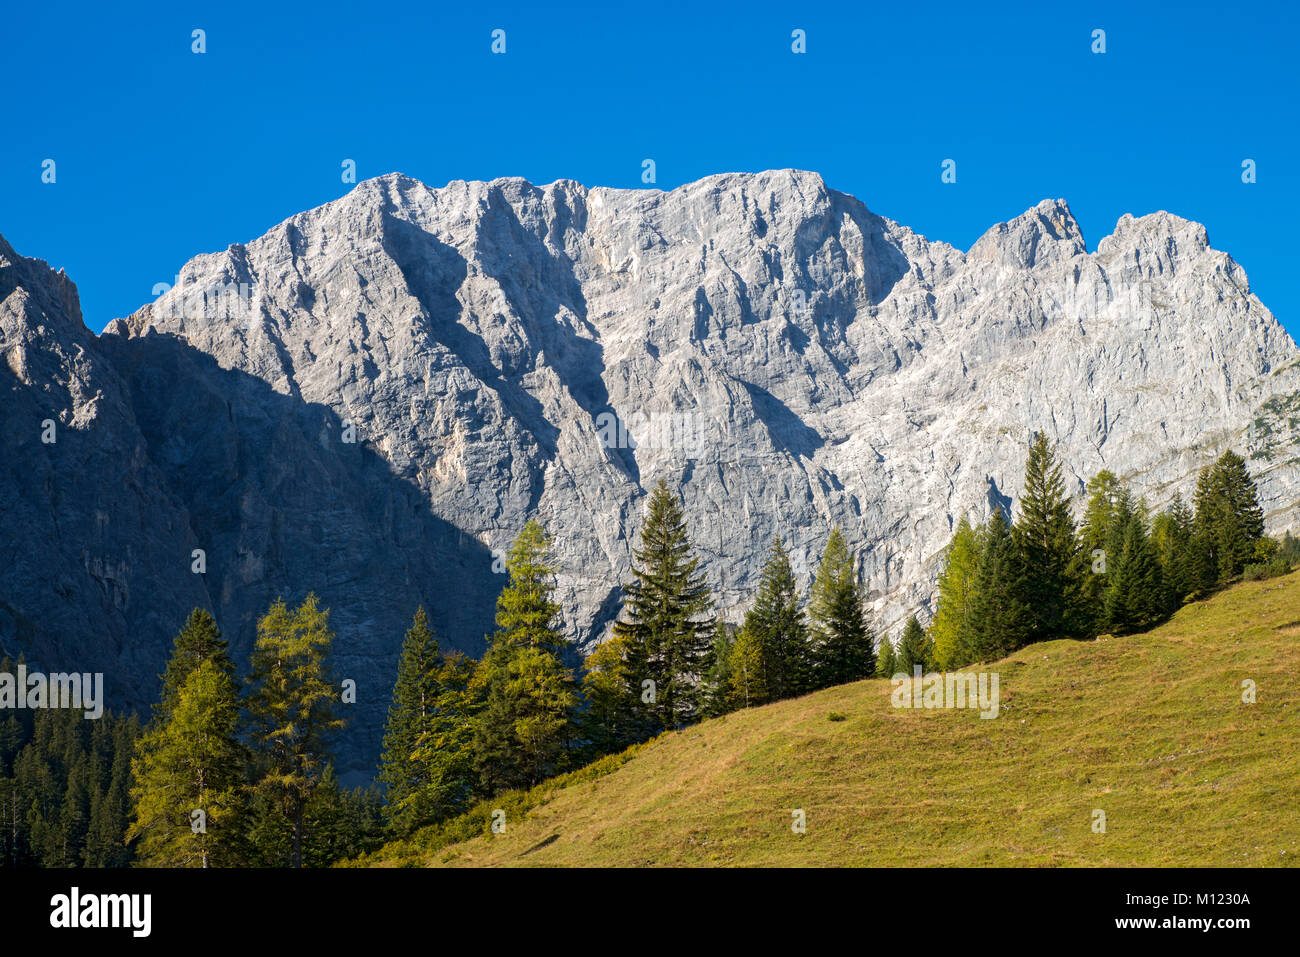 Steile Felswand, grubenkar Peak, Enger-Grund, Karwendel, Tirol, Österreich Stockfoto